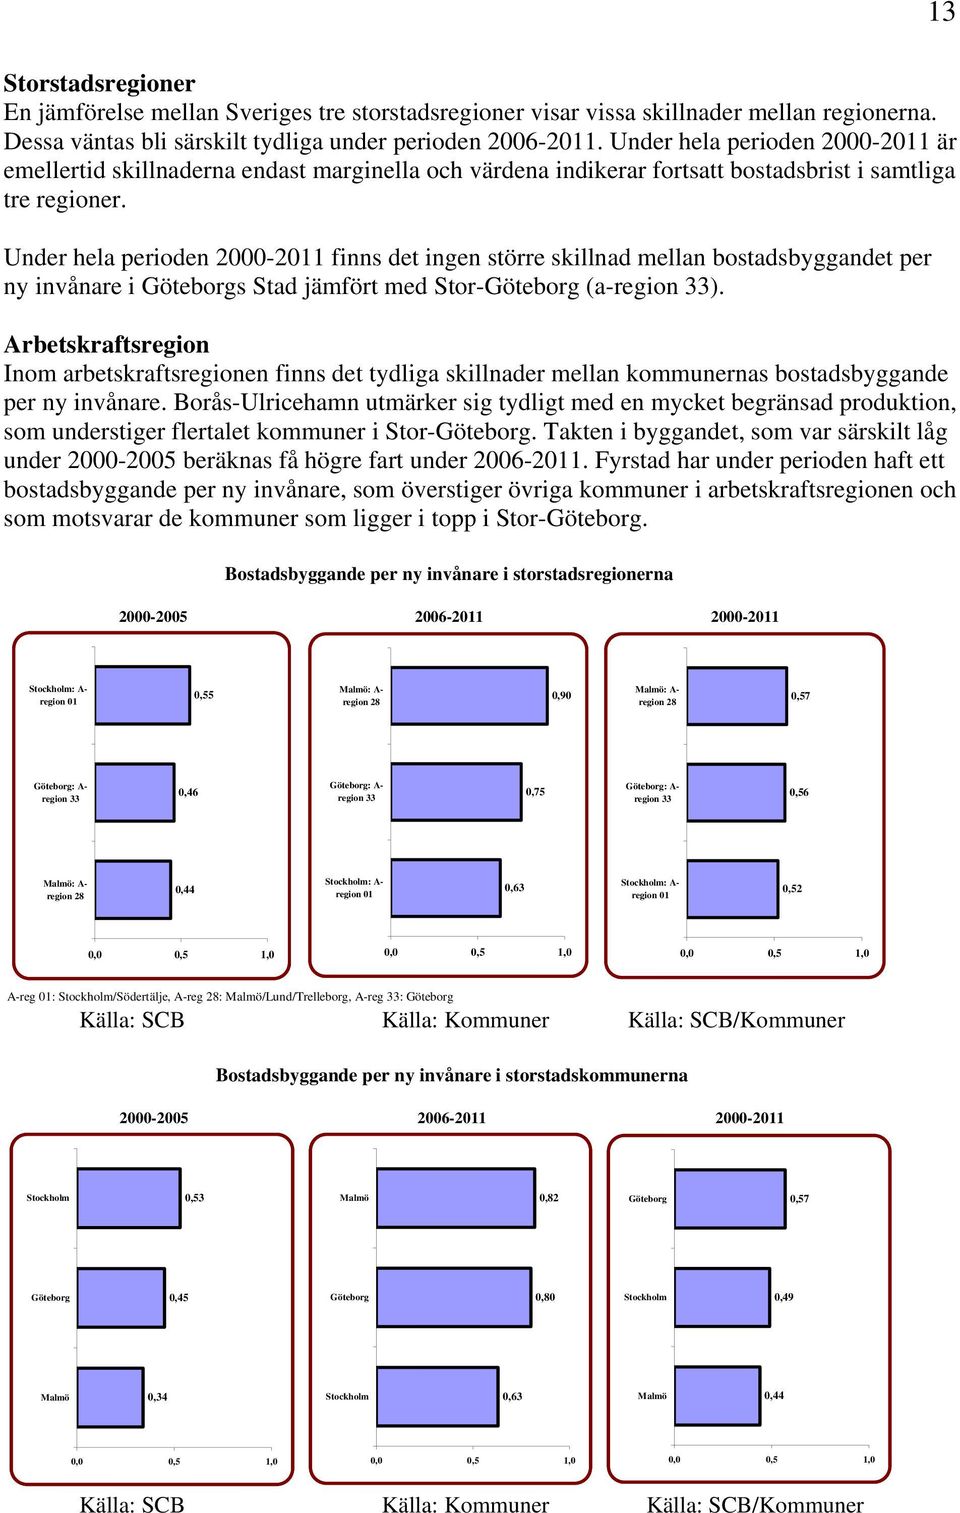 Under hela perioden 2000-2011 finns det ingen större skillnad mellan bostadsbyggandet per ny invånare i Göteborgs Stad jämfört med Stor-Göteborg (a-region 33).